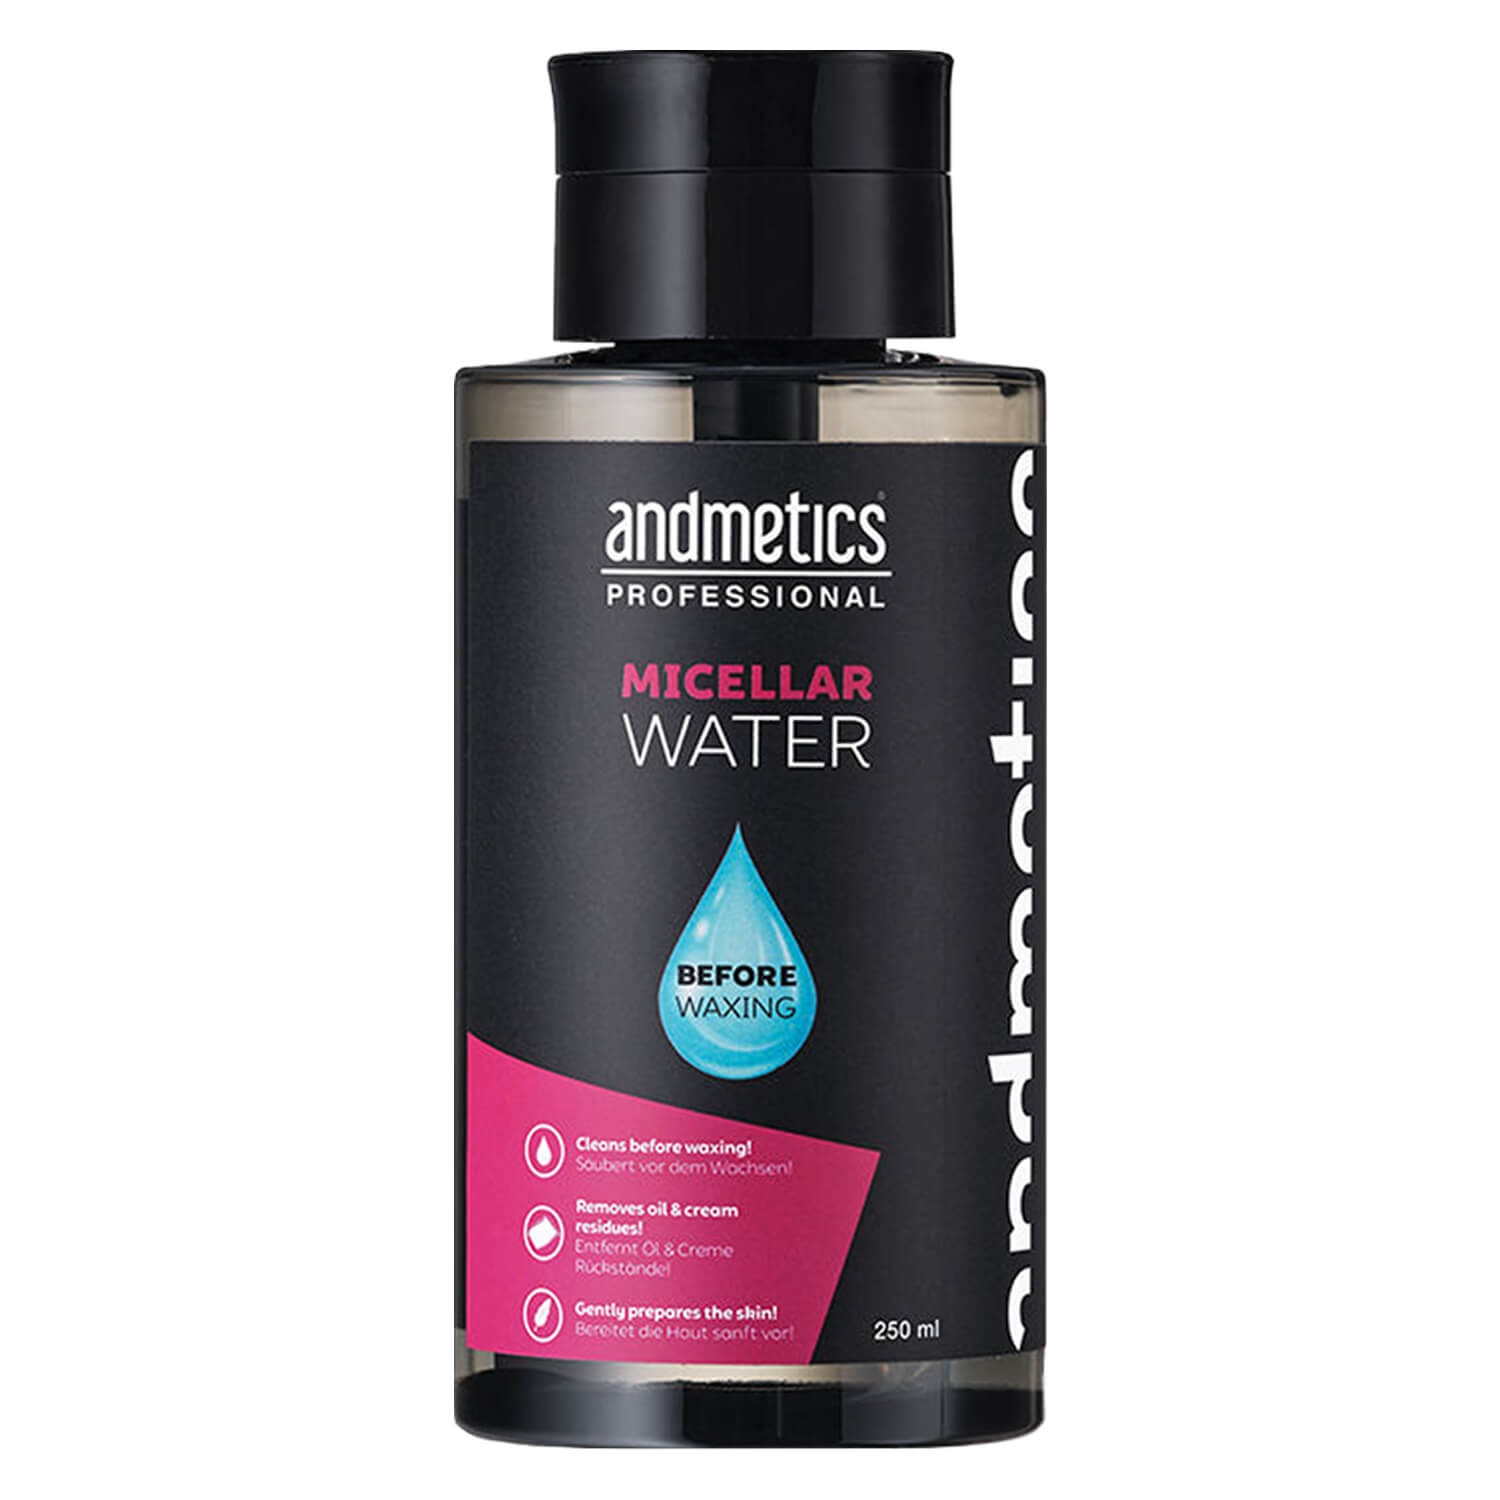 Produktbild von andmetics Professional - Micellar Water